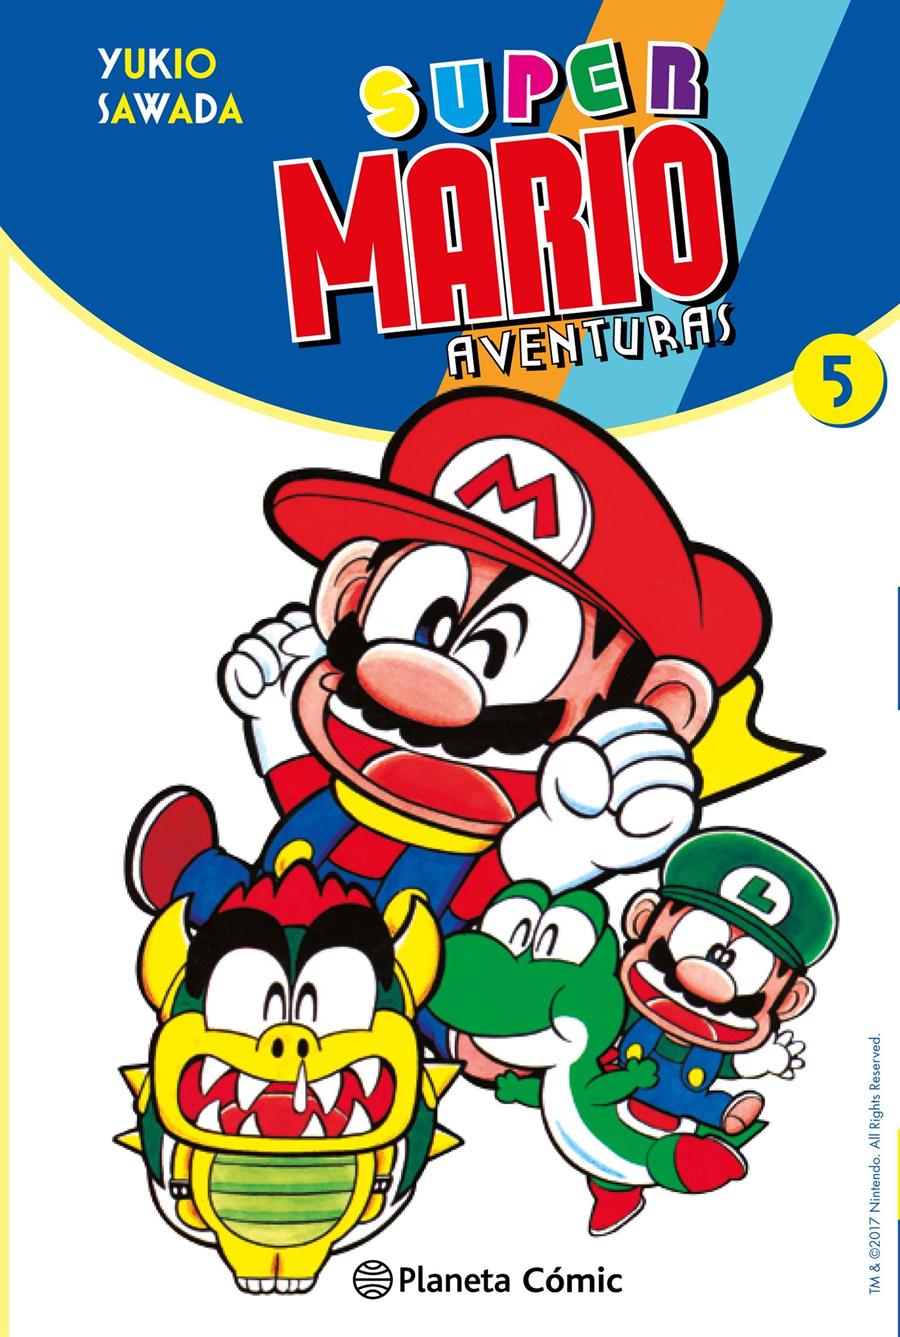 Super Mario nº 05 | N0517-PLA28 | Yukio Sawada | Terra de Còmic - Tu tienda de cómics online especializada en cómics, manga y merchandising